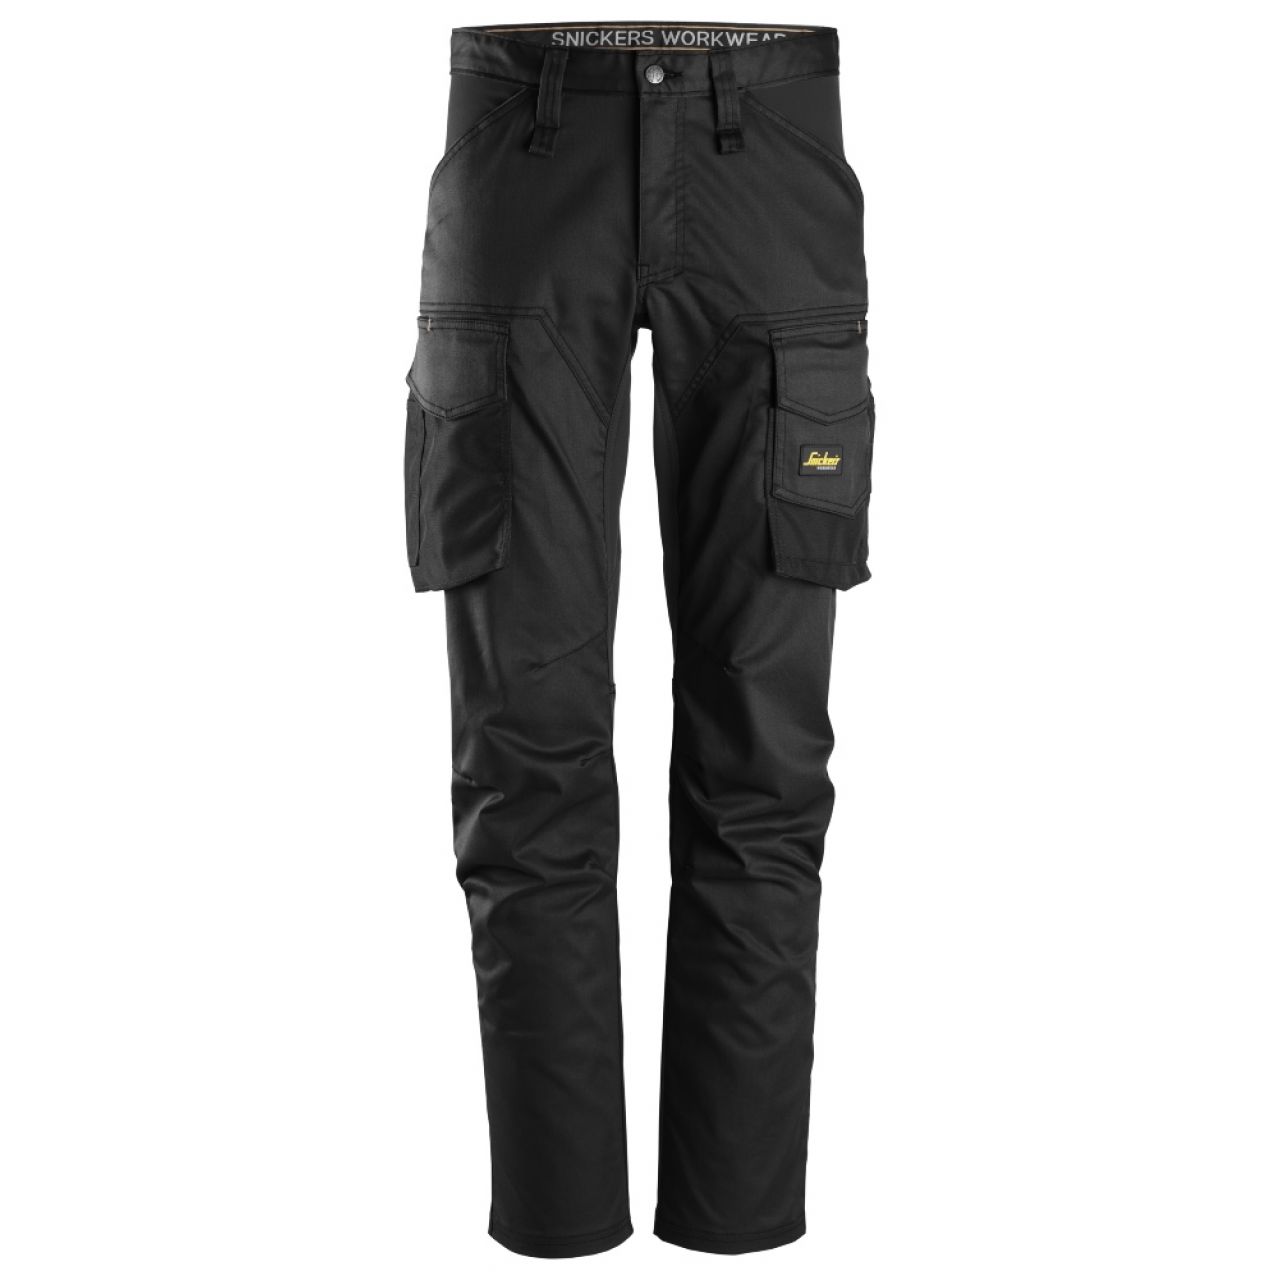 6803 Pantalones largos de trabajo elásticos sin bolsillos para las rodilleras AllroundWork negro talla 258